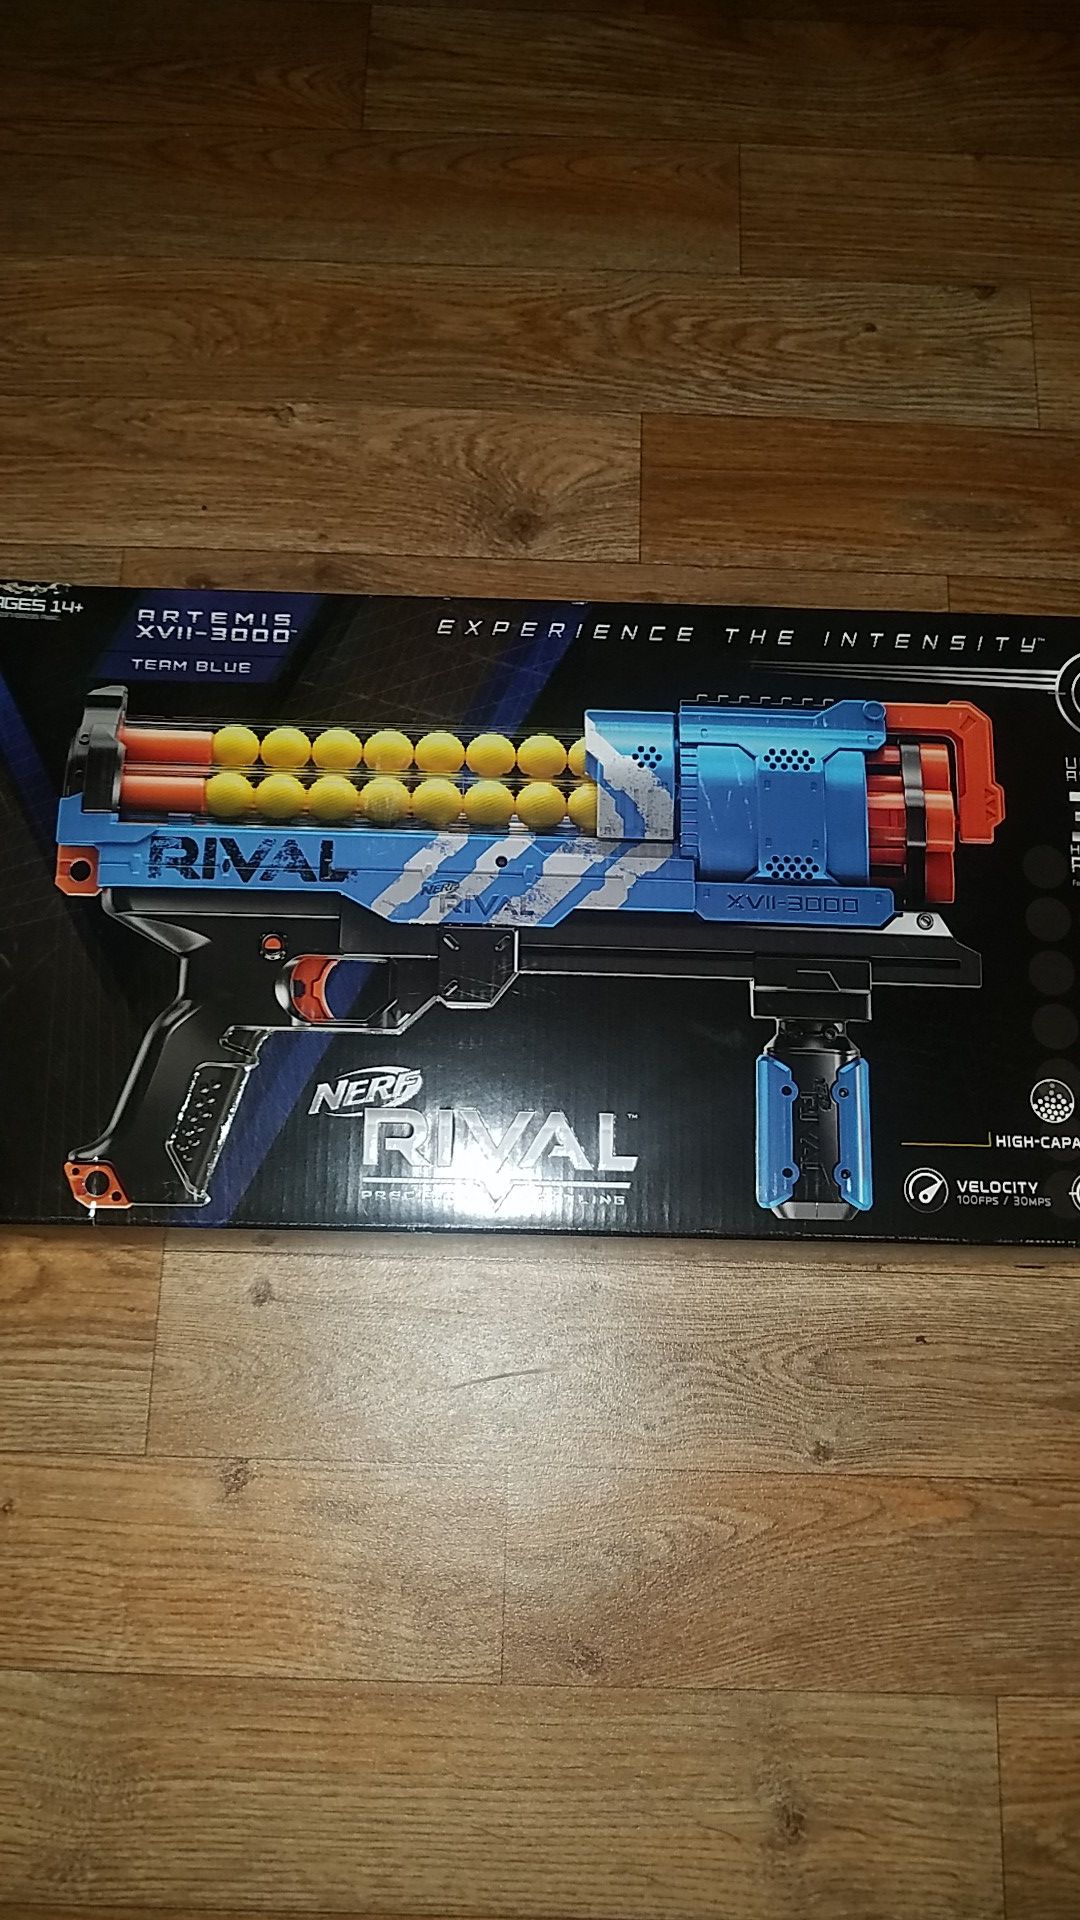 Rival nerf gun